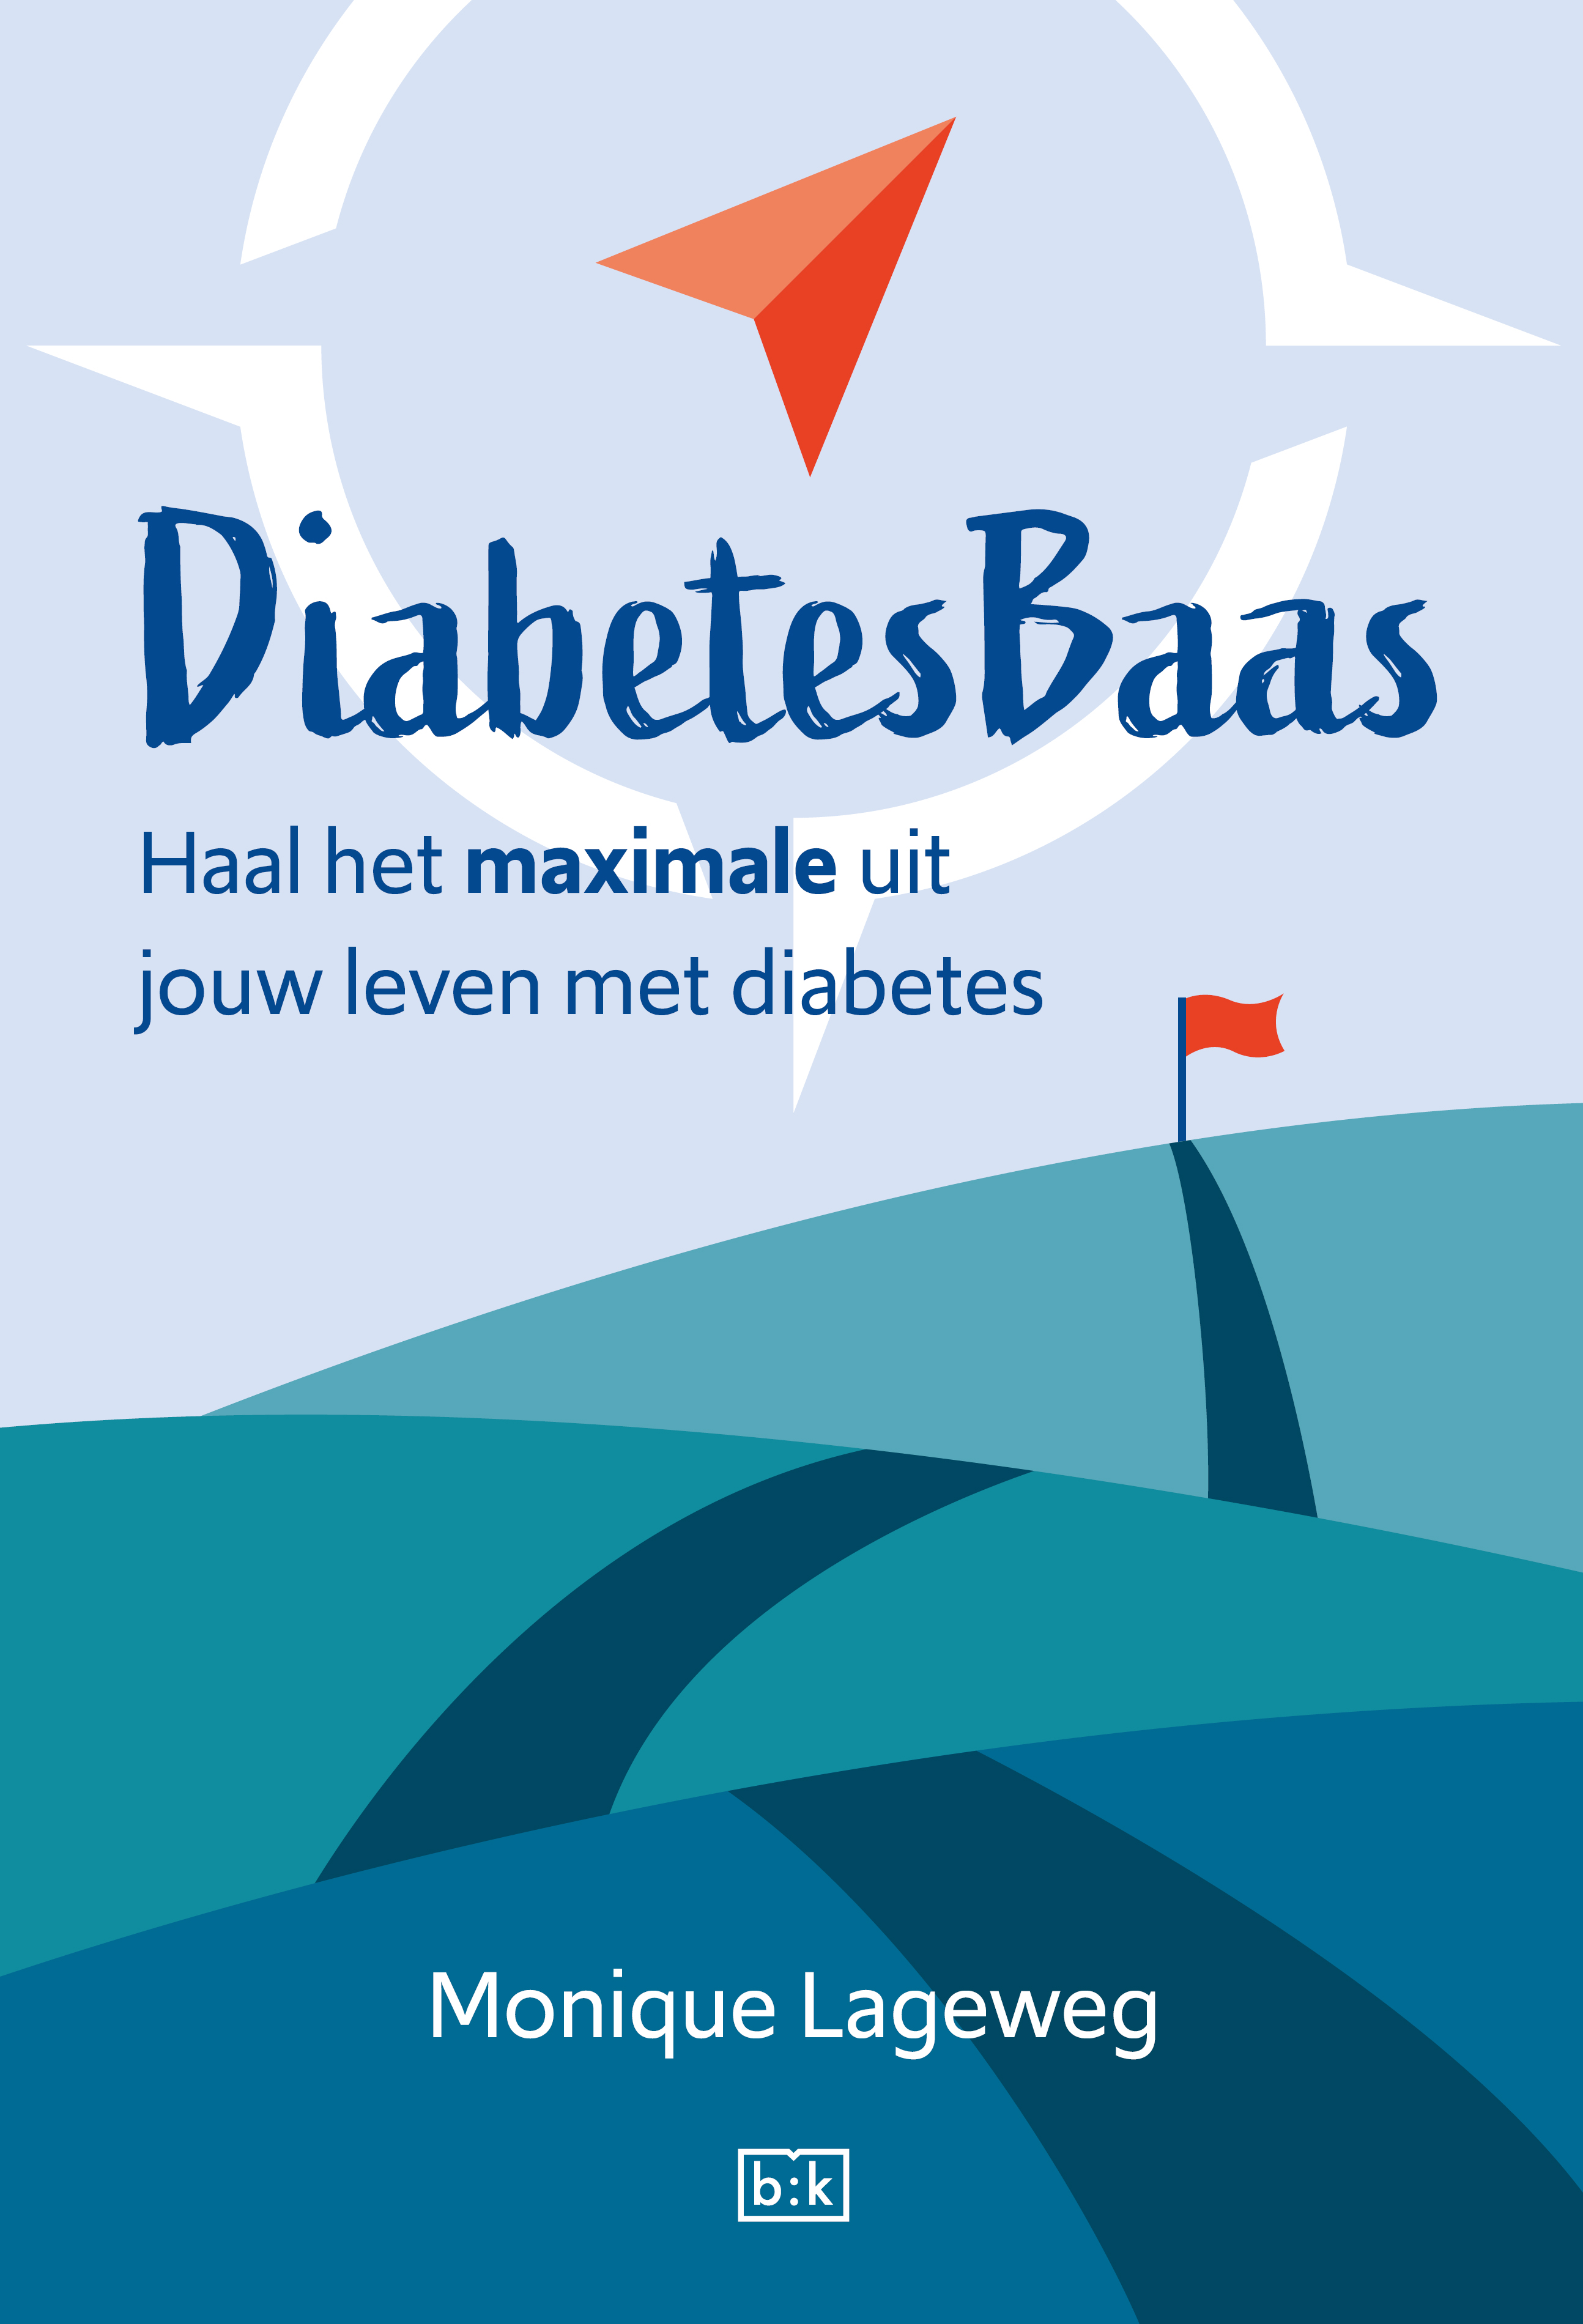 DiabetesBaas